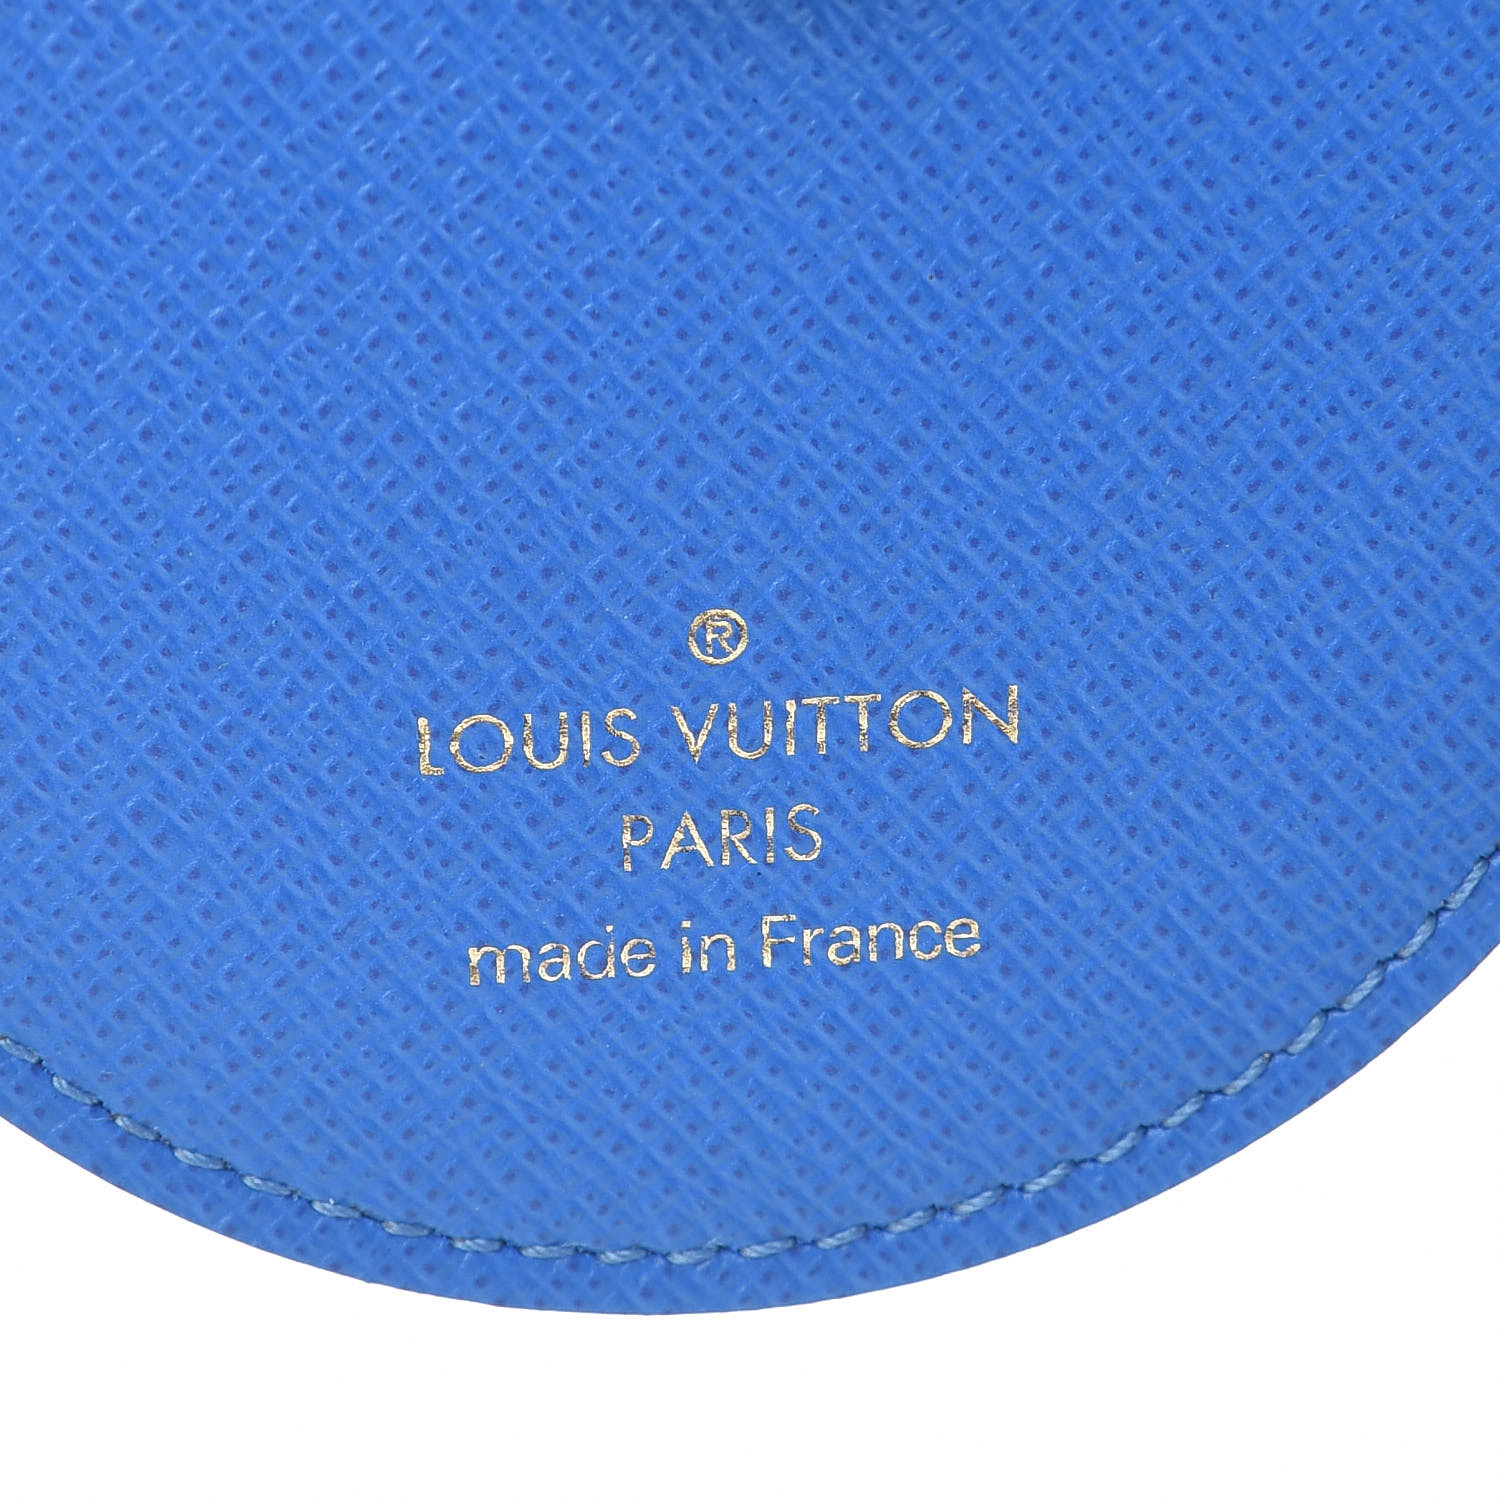 LOUIS VUITTON Monogram Vivienne Xmas Venice Bag Charm Key Holder 487657